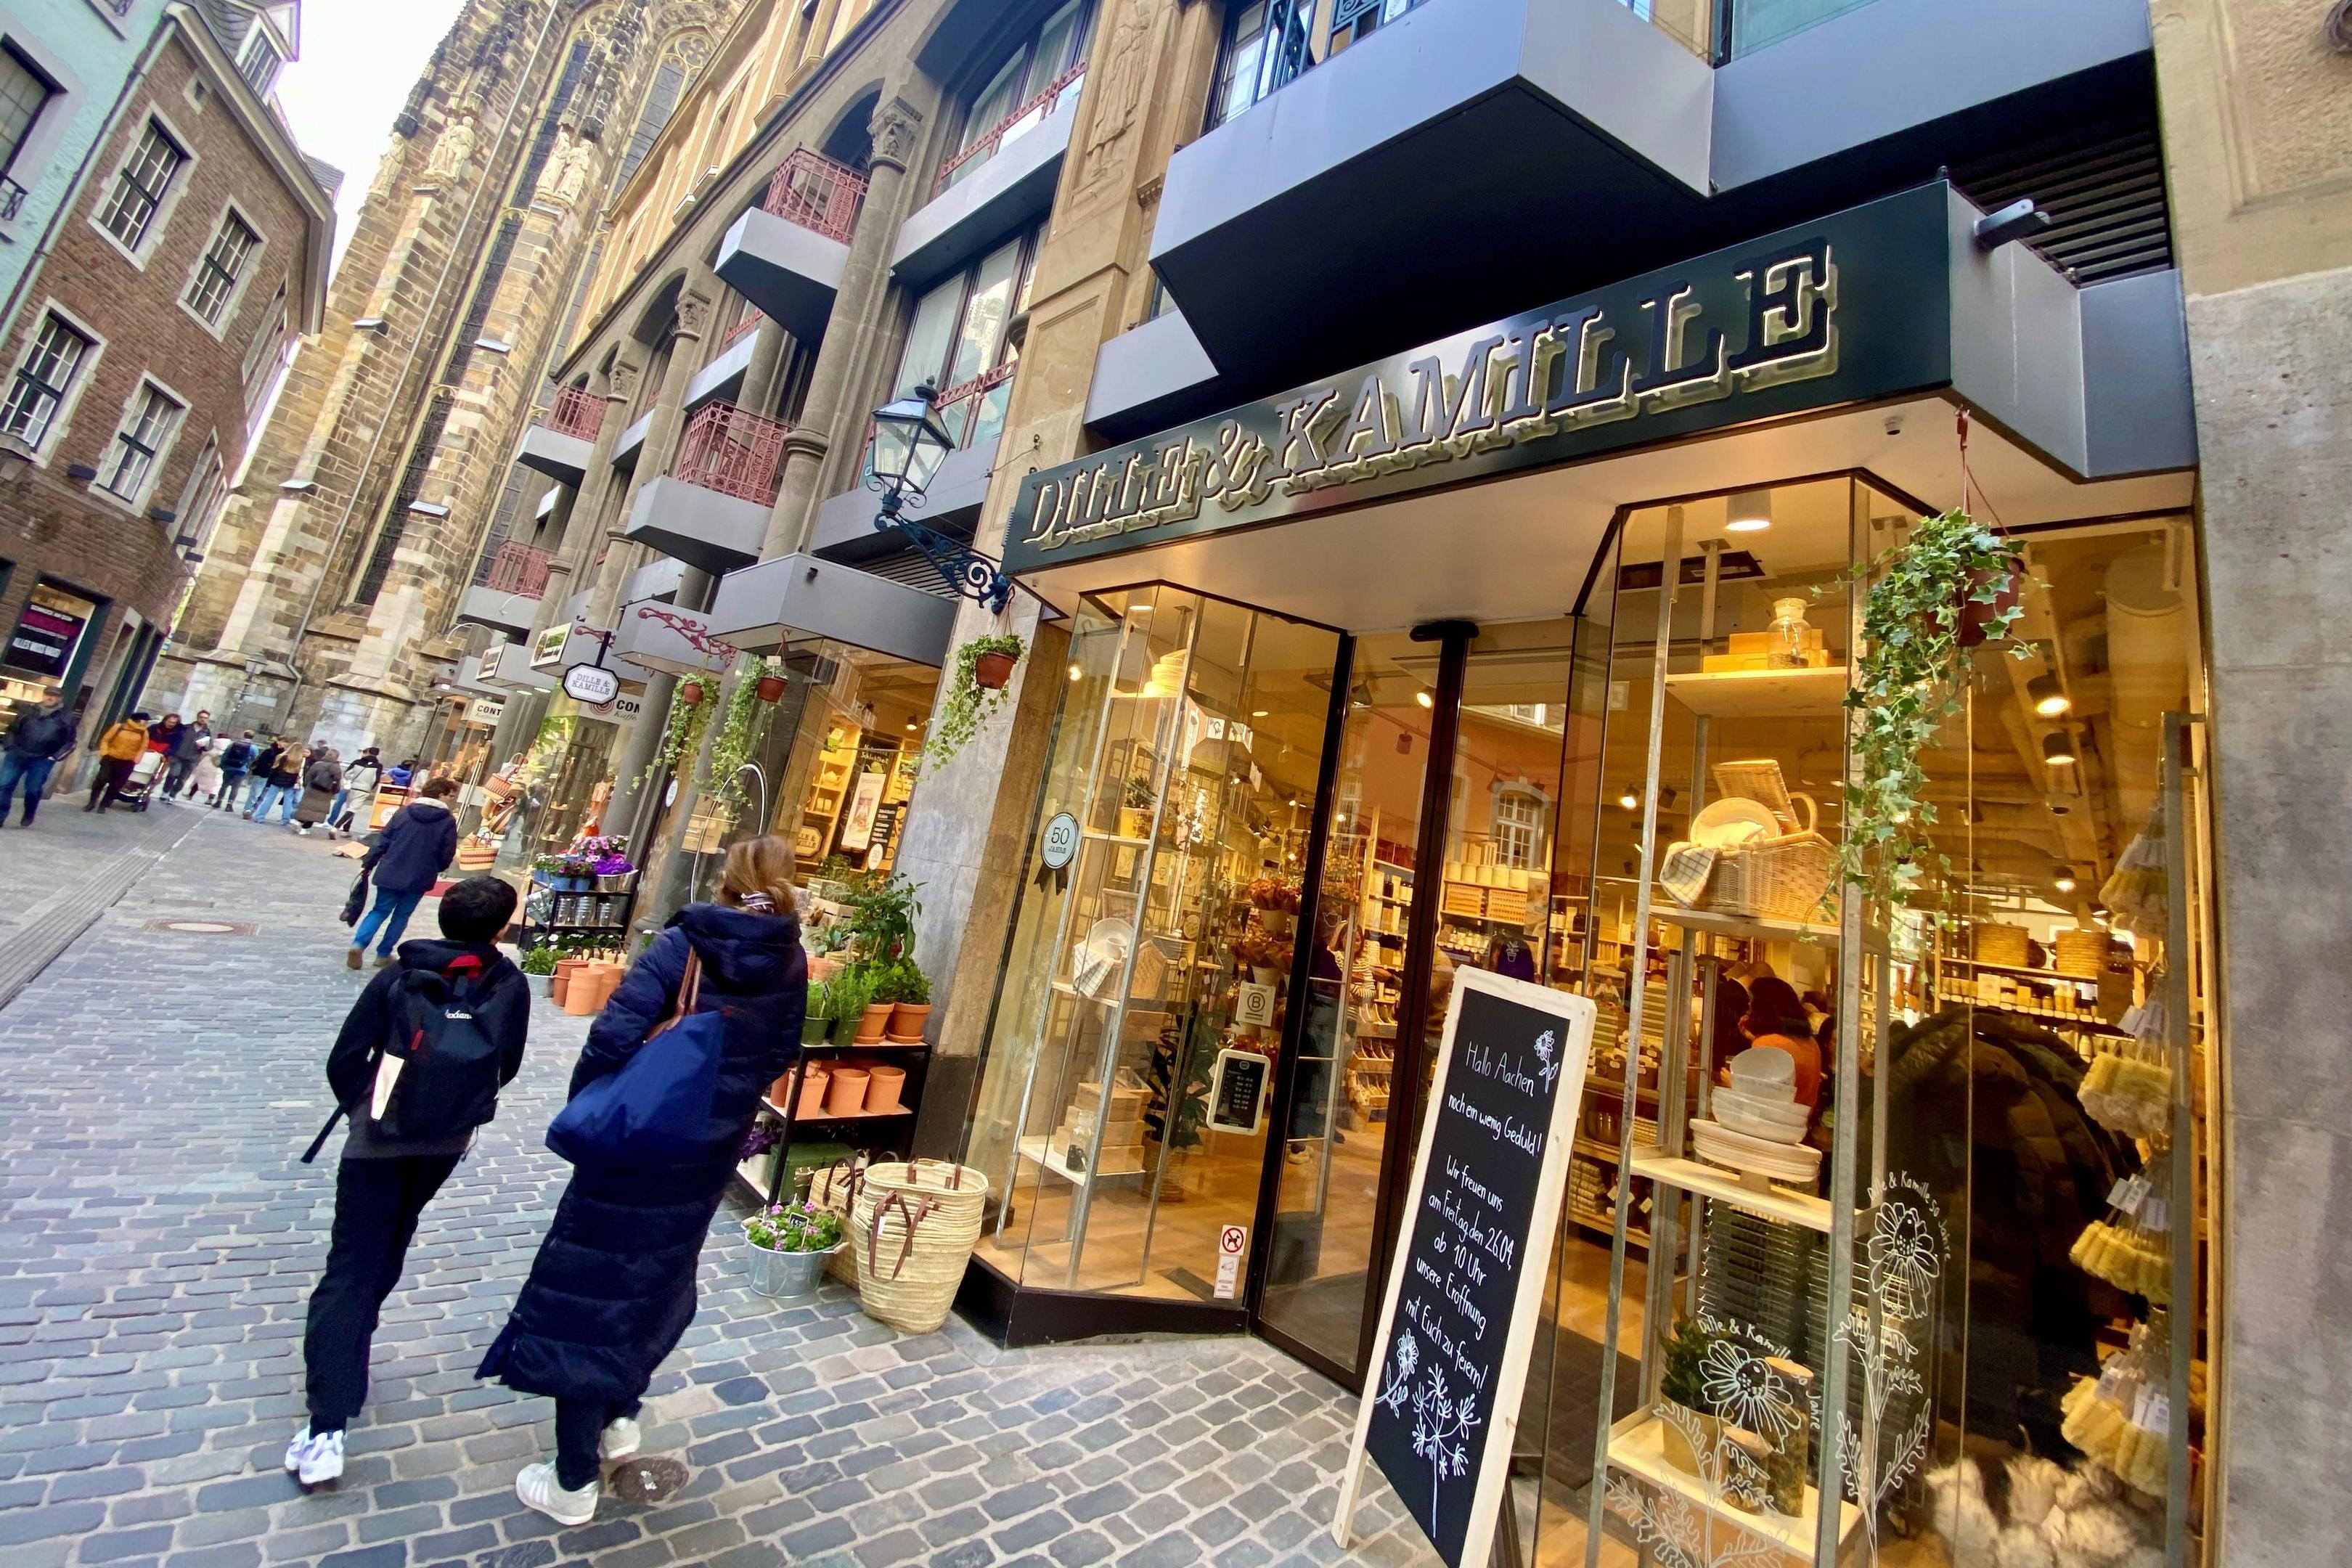 Zwei Geschäfte im Schatten des Doms zusammengelegt: Dille und Kamille hat in der Krämerstraße neu eröffnet.